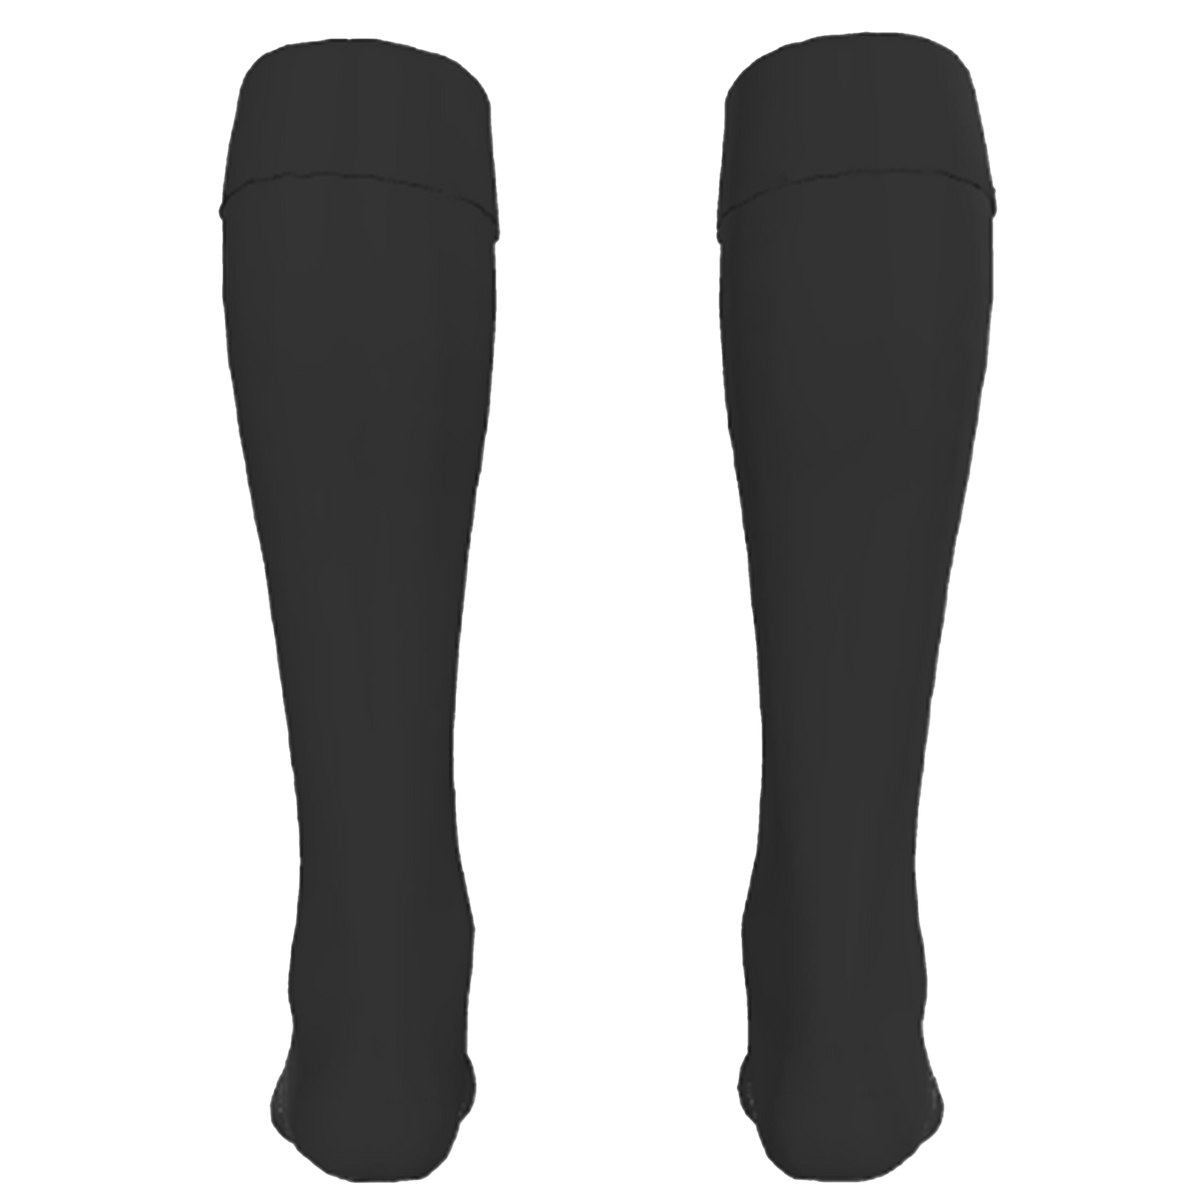 Custom Rugby Socks - Back - Unisex - Solid Color Option